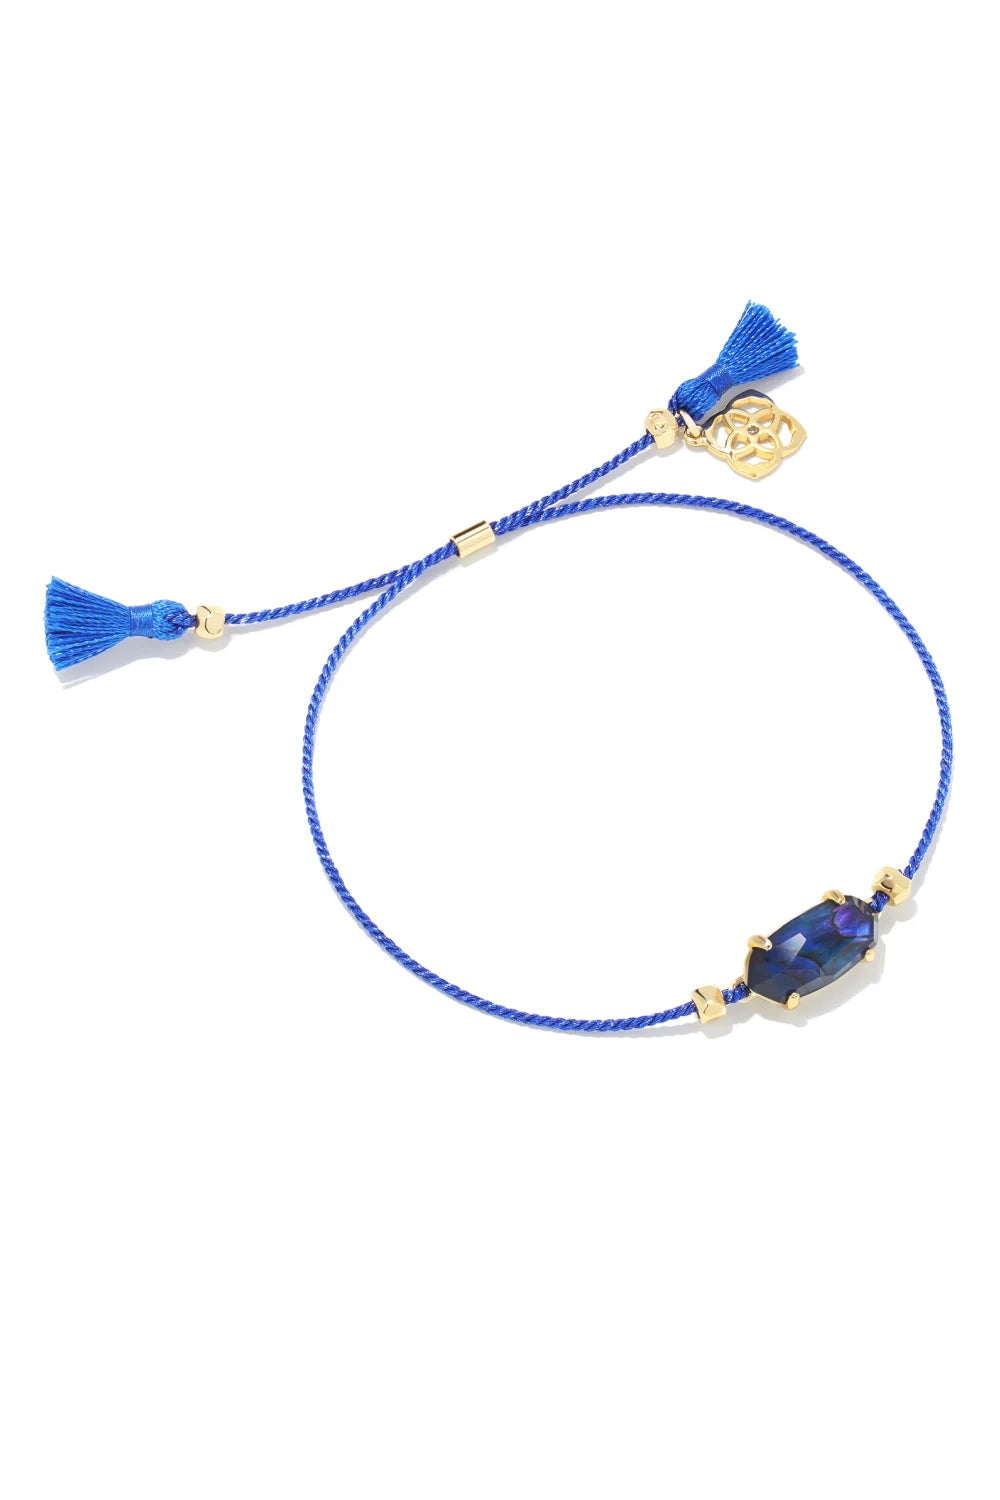 Kendra Scott: Everlyne Navy Cord Friendship Bracelet - Navy Abalone | Makk Fashions